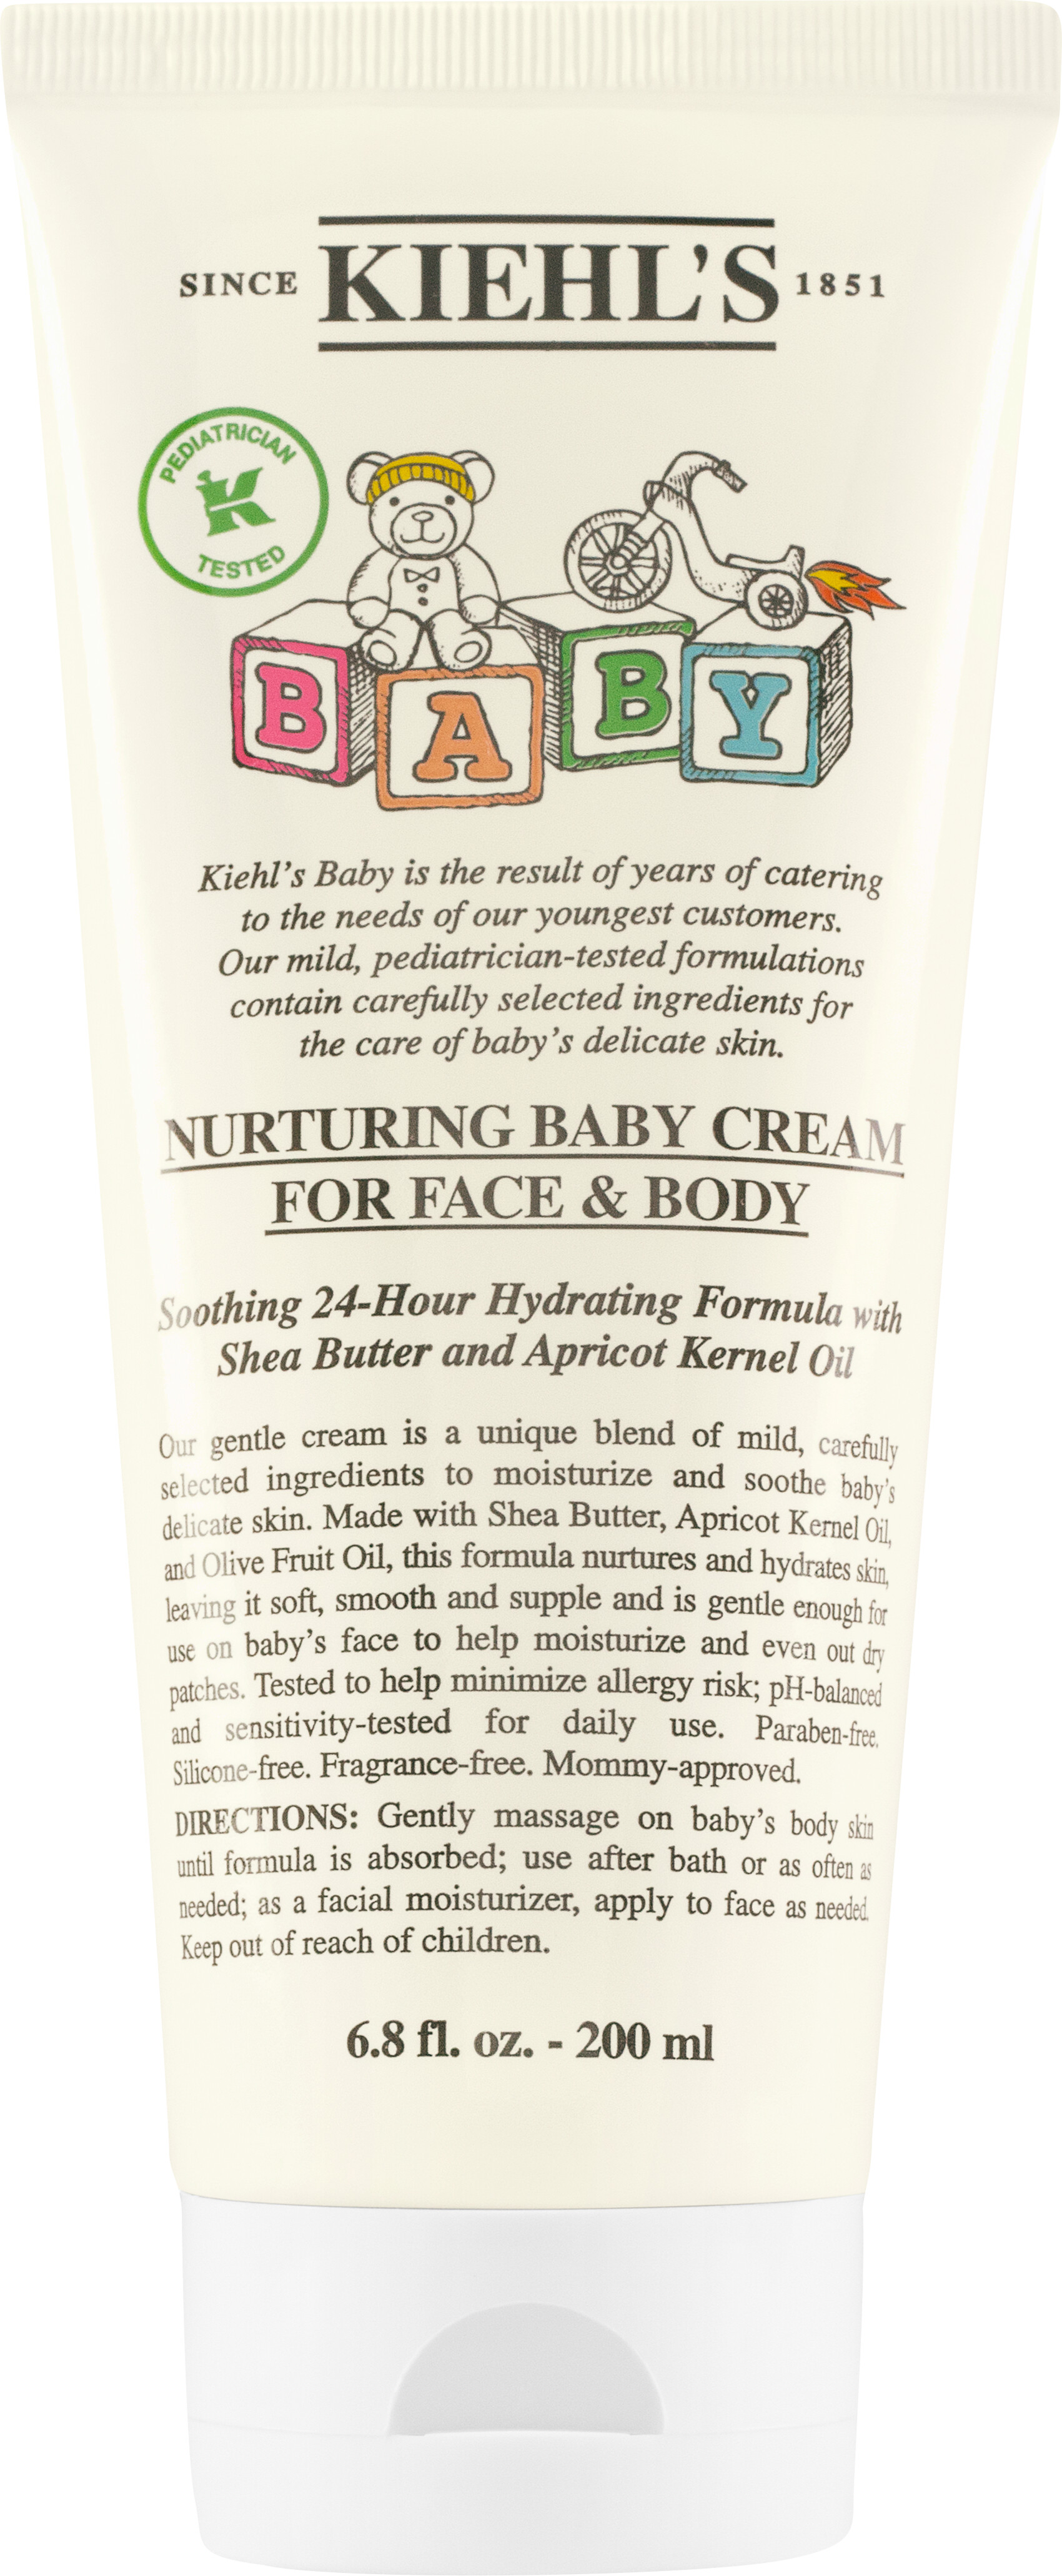 Kiehl's Baby Nurturing Cream for Face & Body 200ml